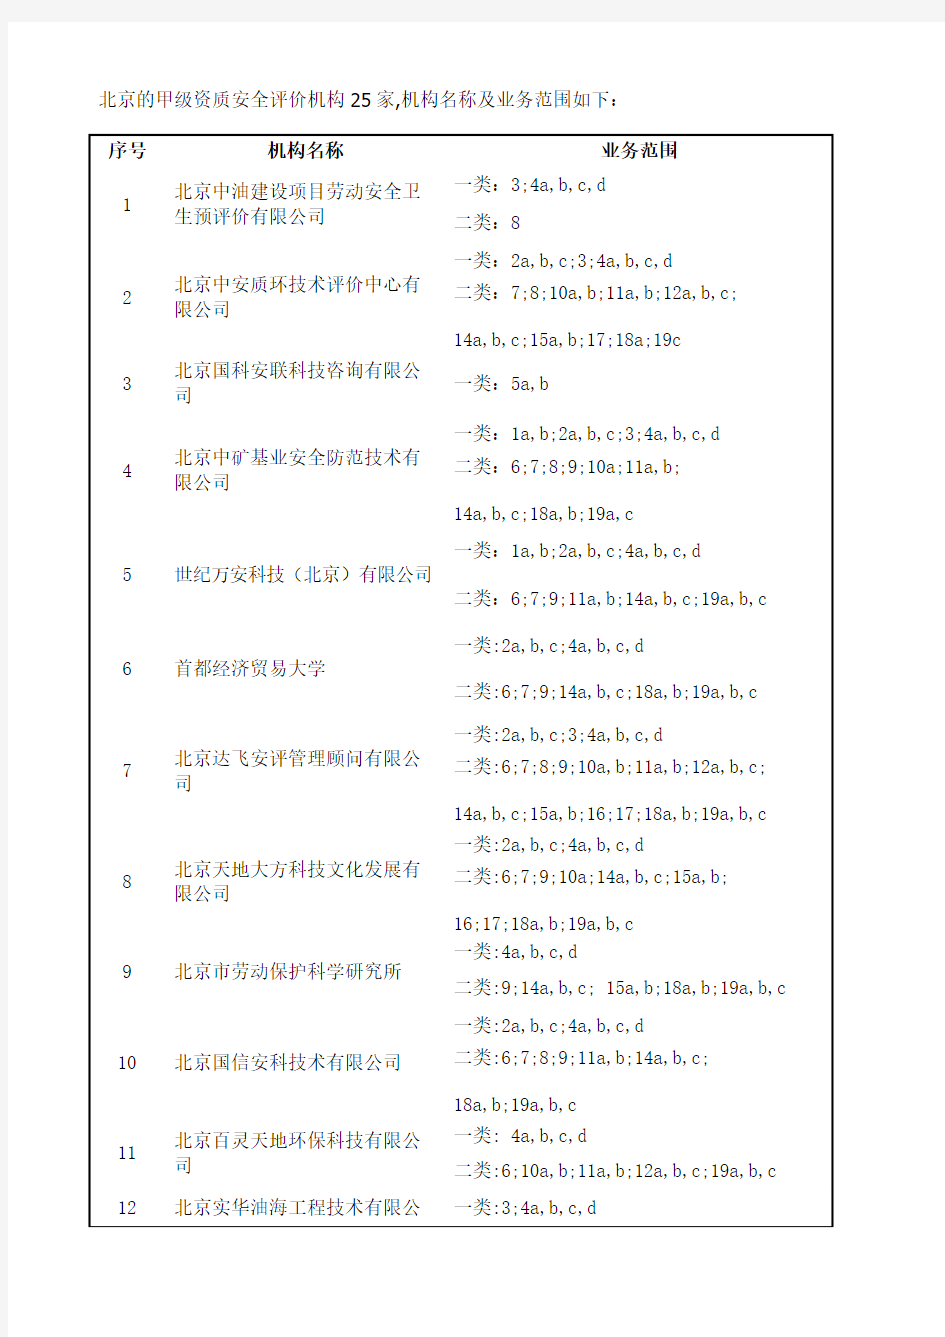 北京的甲级安全评价机构名单